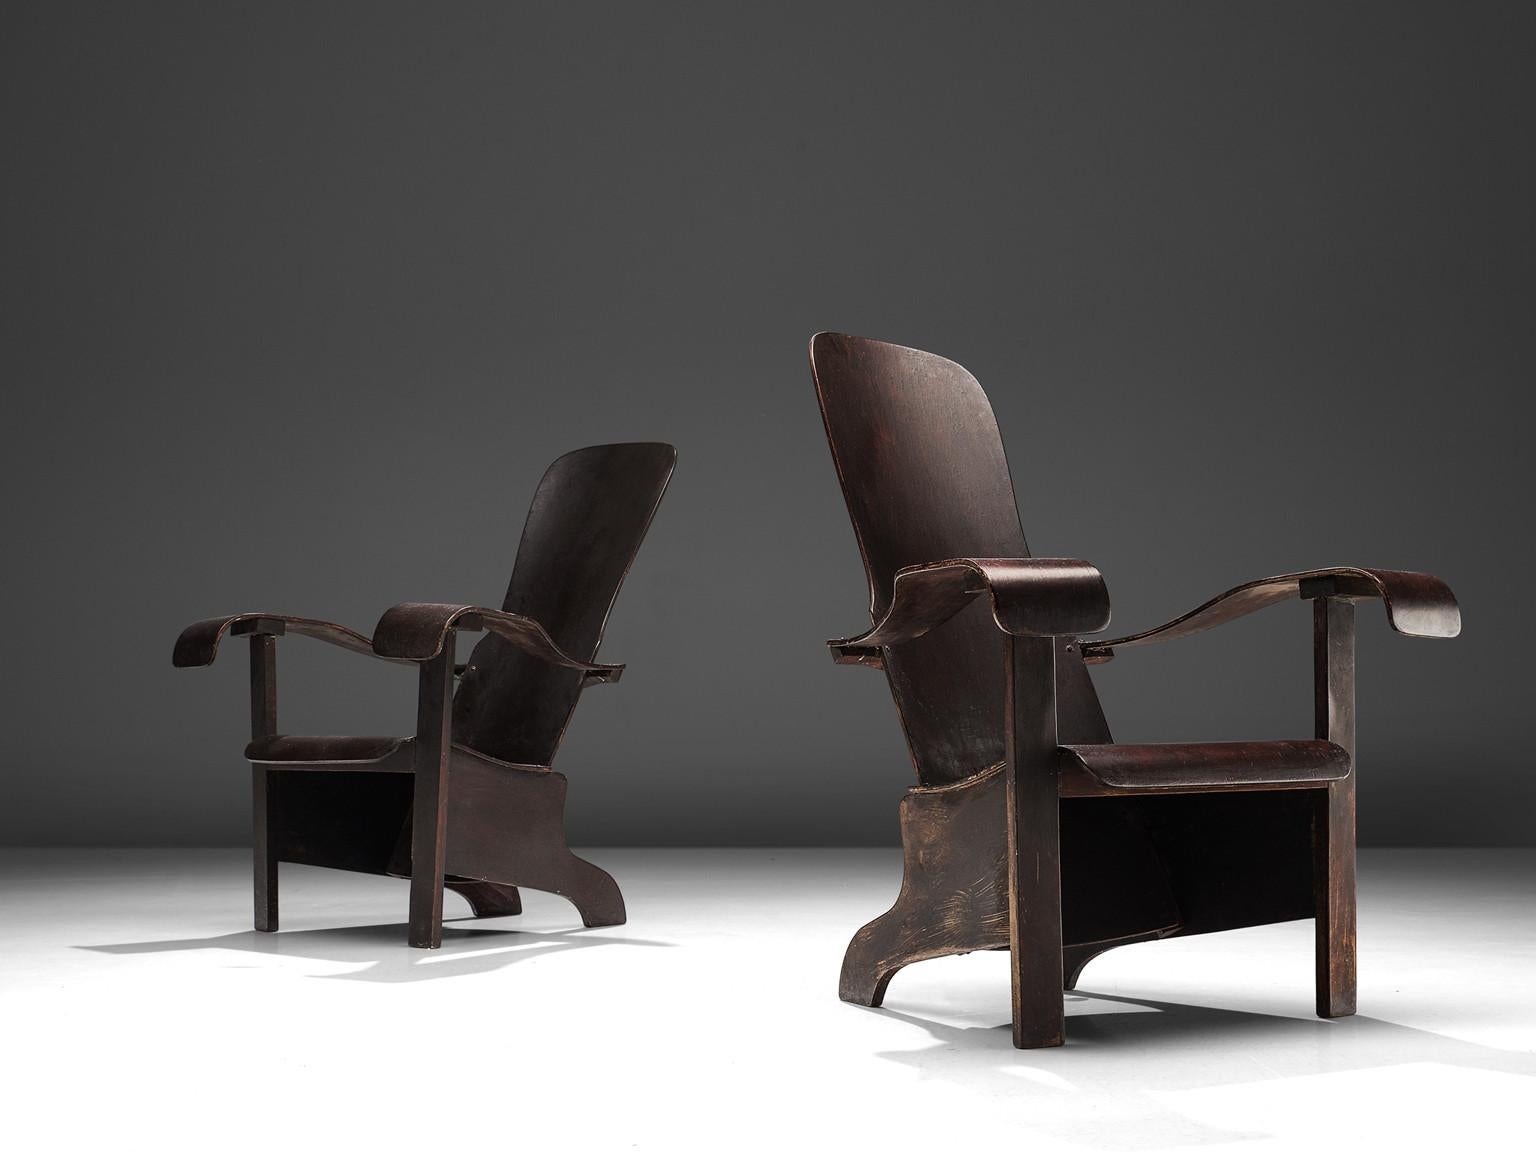 Móveis Cimo, paire de chaises longues, bois stratifié, Brésil, années 1940

Des chaises longues brésiliennes bien sculptées qui méritent une place de choix dans un intérieur. La construction est basée sur des angles arrondis et des lignes courbes,